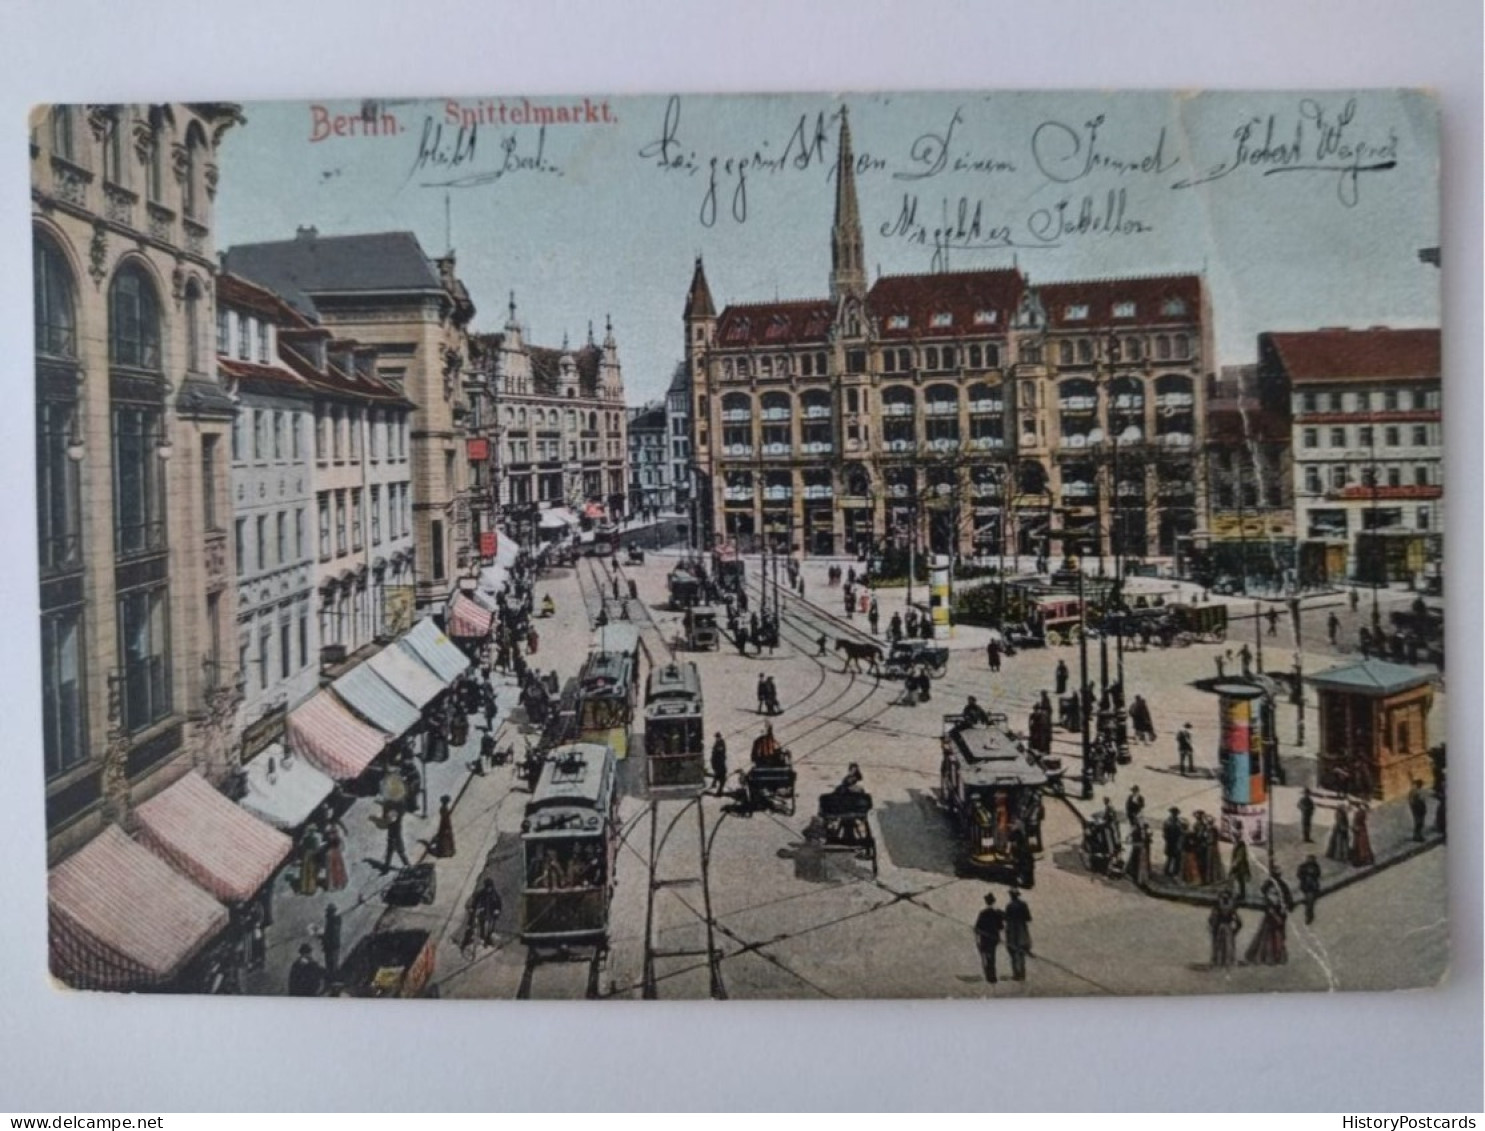 Berlin, Spittelmarkt, Strassenbahnen, Kutschen, 1905 - Mitte